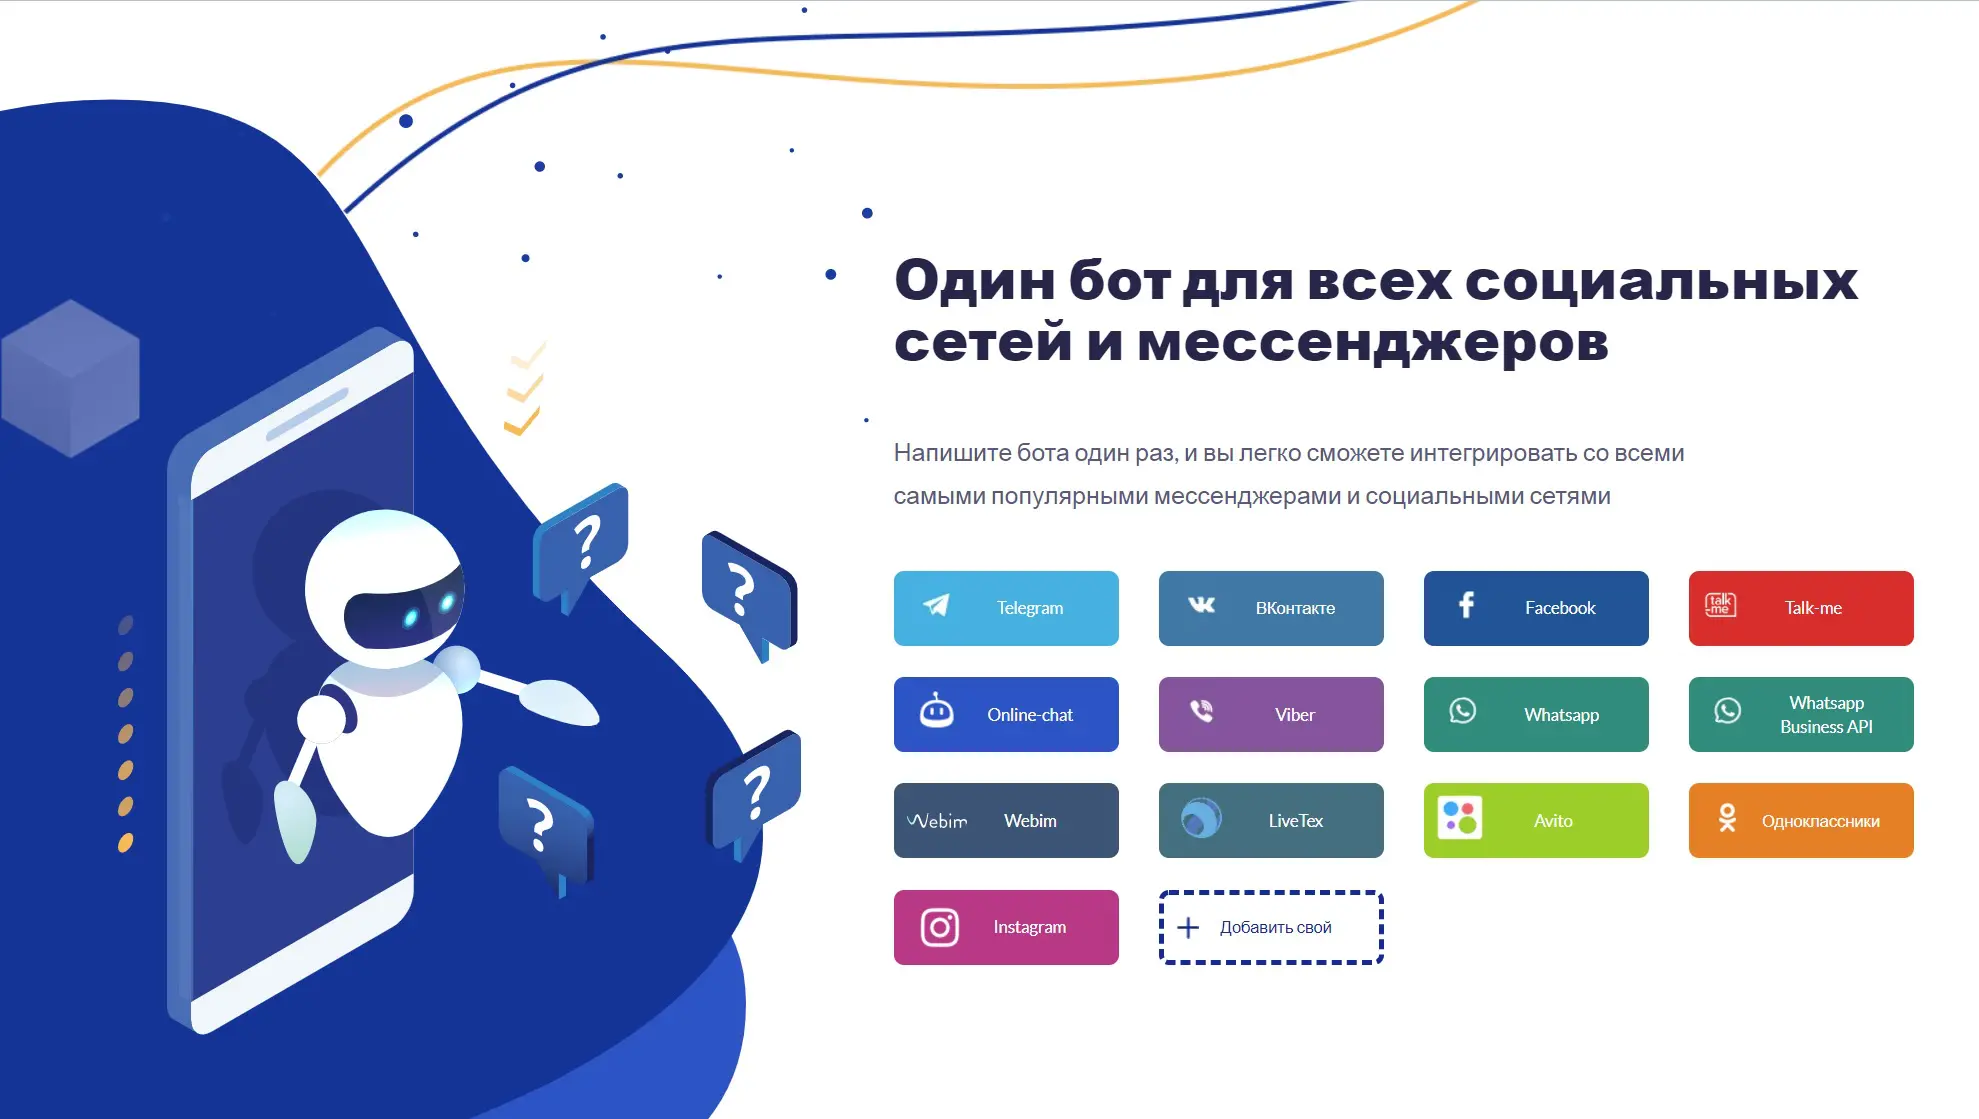 Горячая линия мтс: как позвонить оператору и быстро дозвониться — kakpozvonit.ru